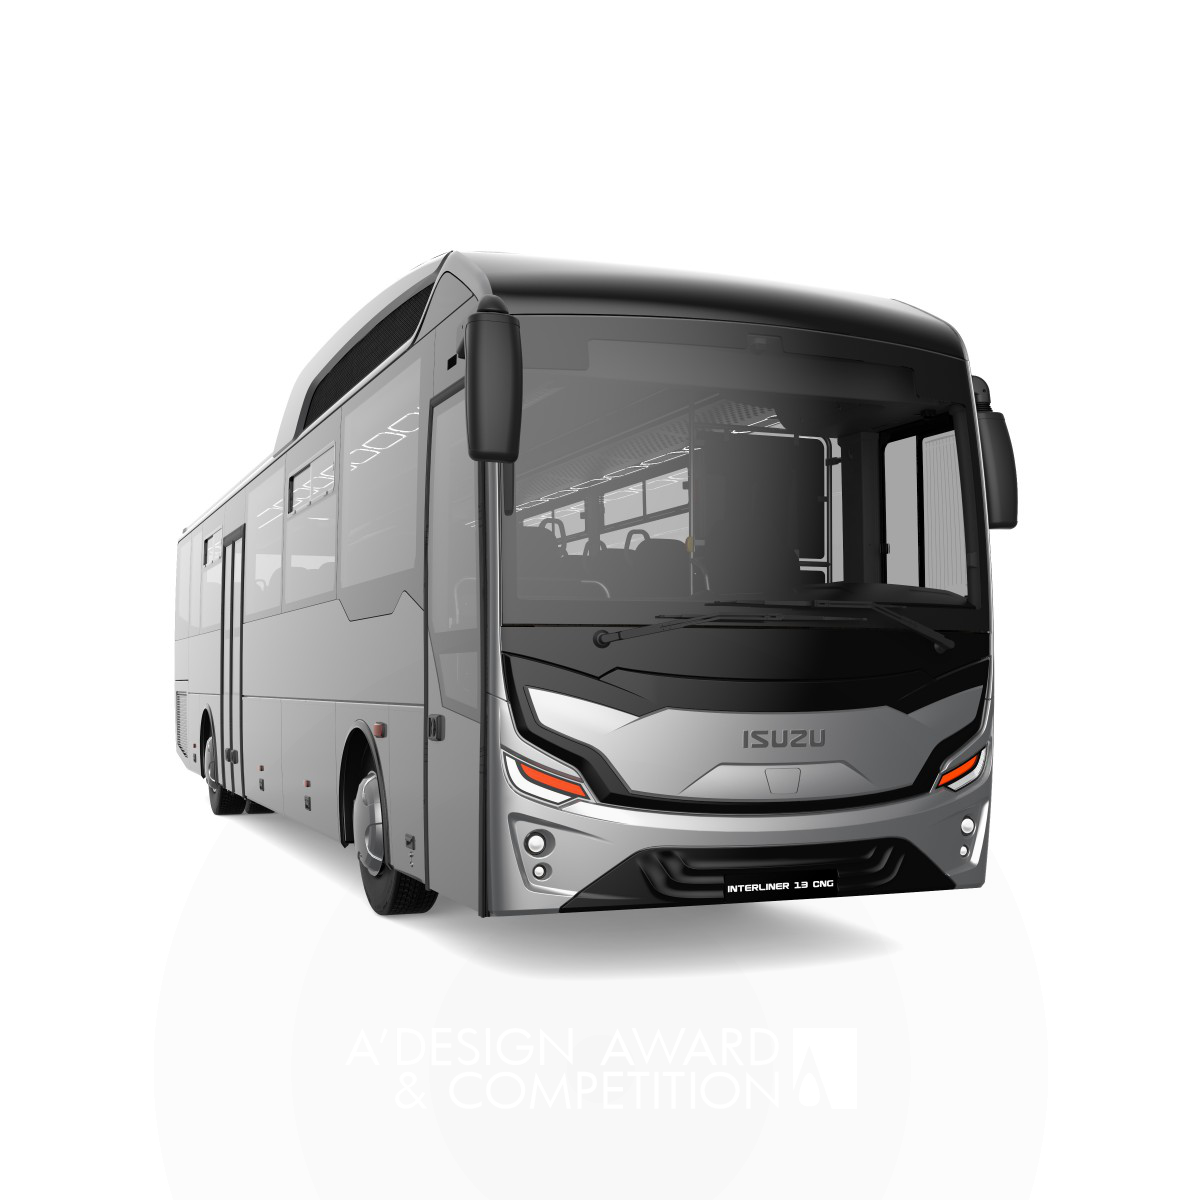 Interliner Bus by Anadolu Isuzu Design Team